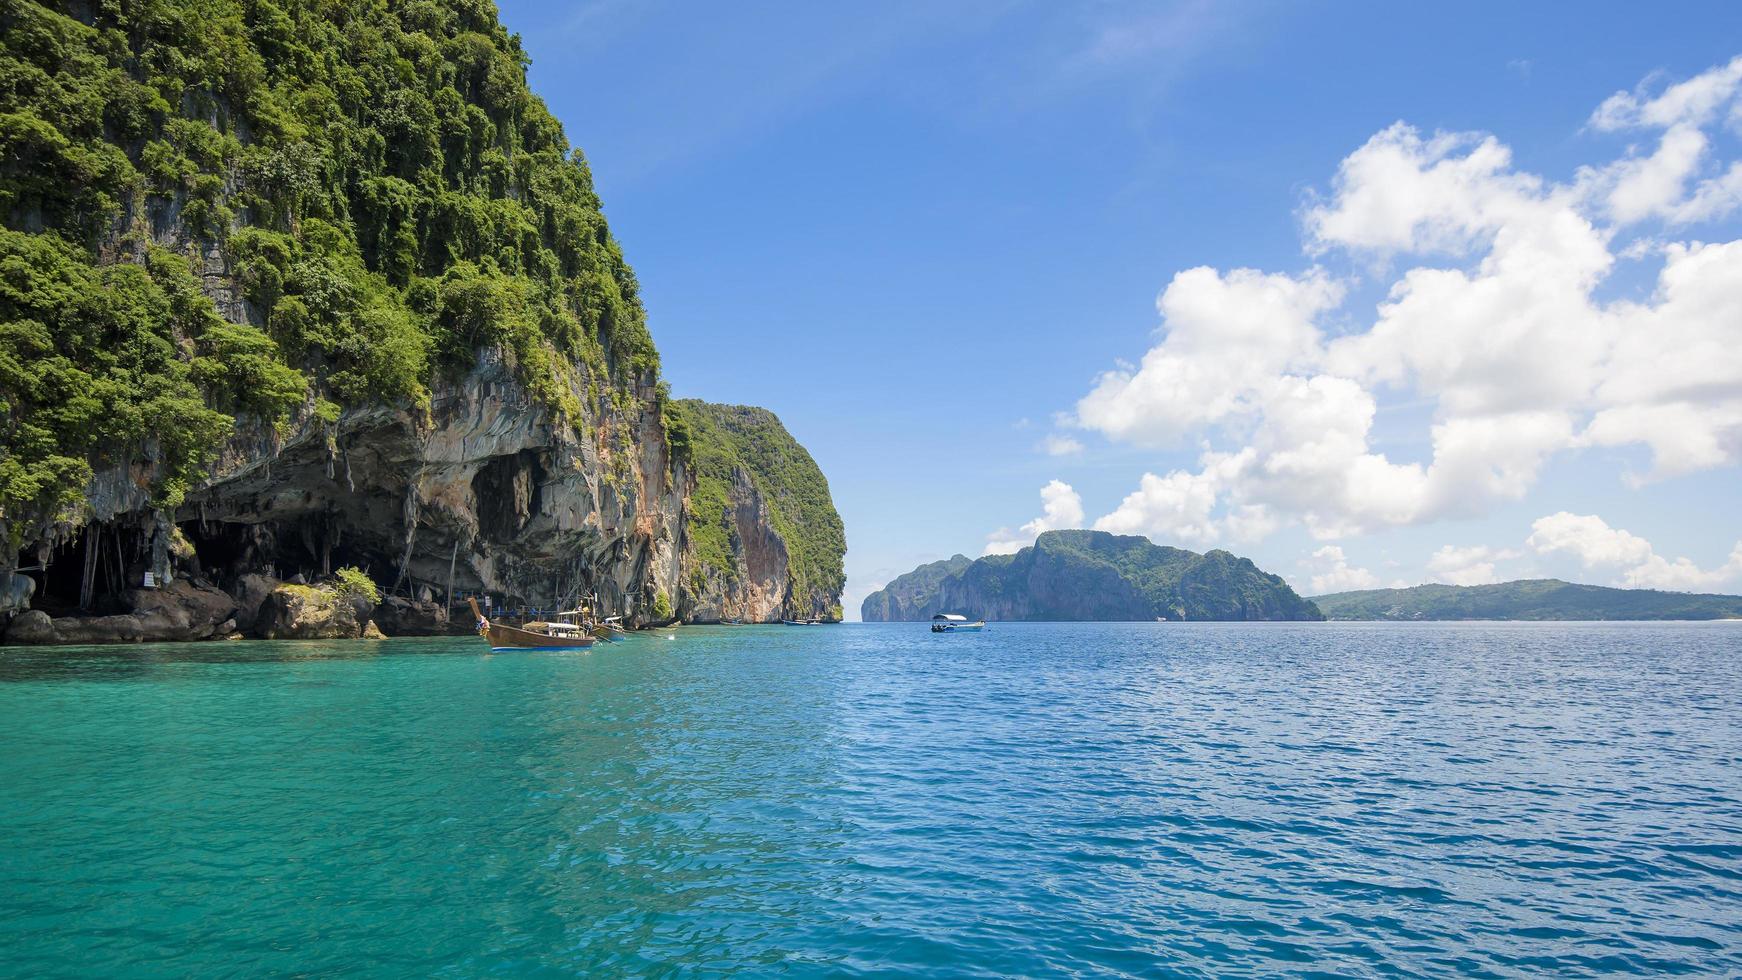 Schöne Aussichtslandschaft mit tropischem Strand, smaragdgrünem Meer und weißem Sand gegen blauen Himmel, Maya-Bucht auf der Insel Phi Phi, Thailand? foto